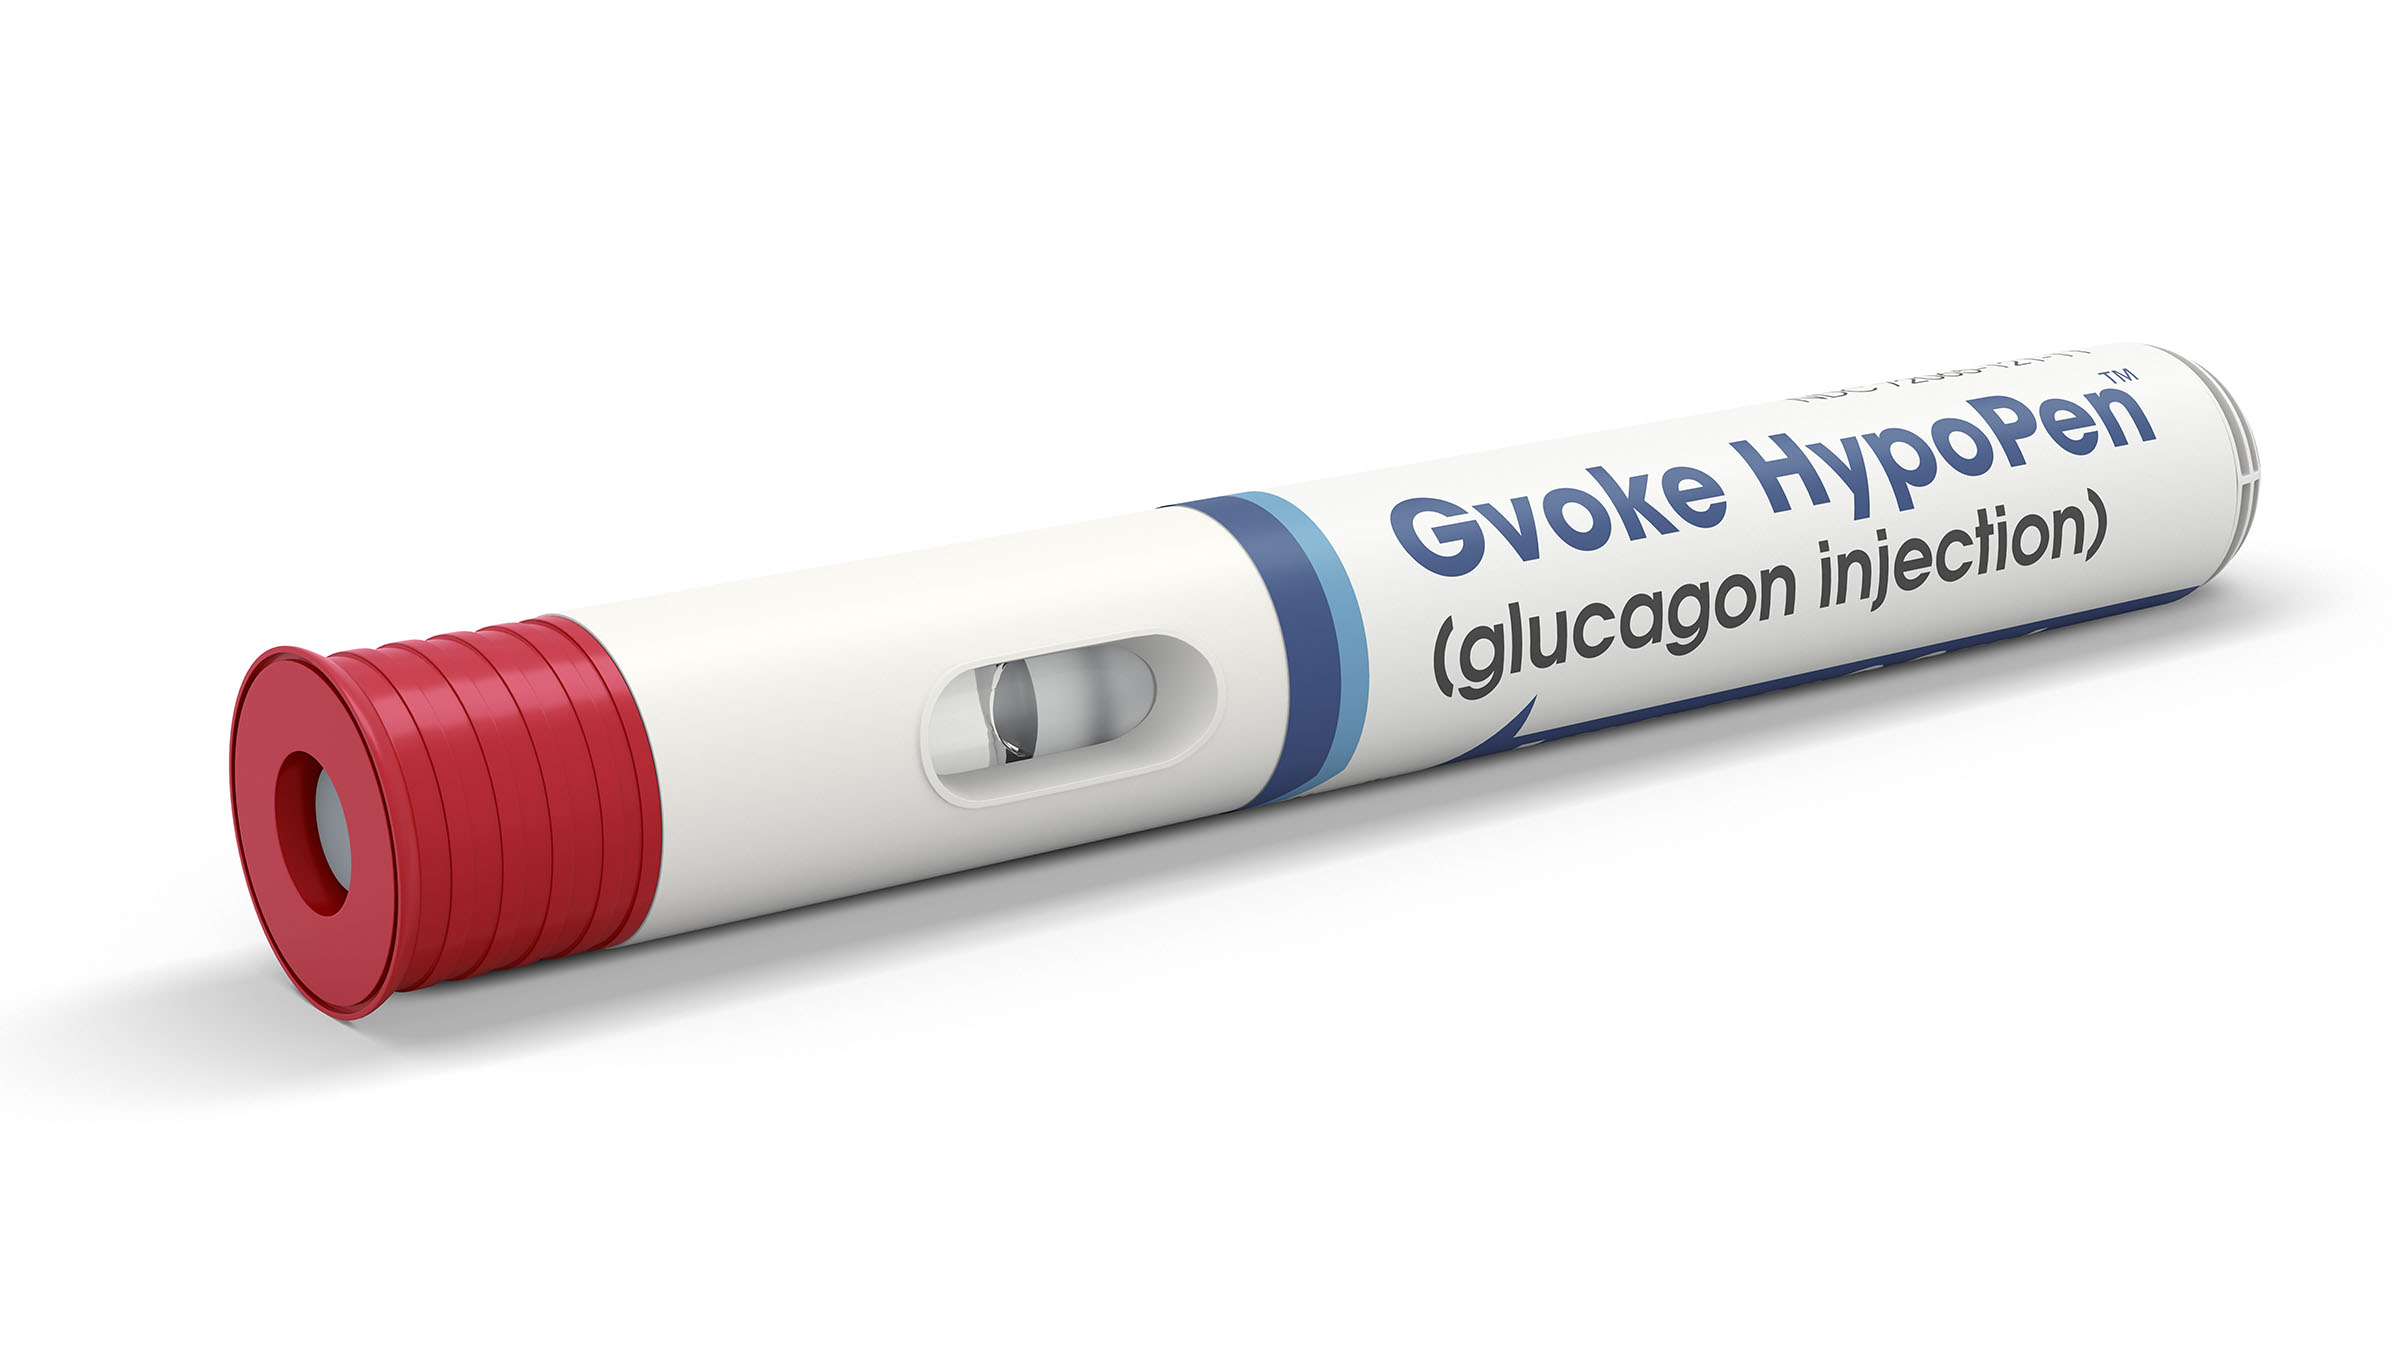 دواء غلوكاغون: الاستخدامات والجرعات والتأثيرات الجانبية والتحذيرات - هرمون يرفع مستوى سكر الدم - دواء لمعالجة انخفاض سكر الدم الشديد